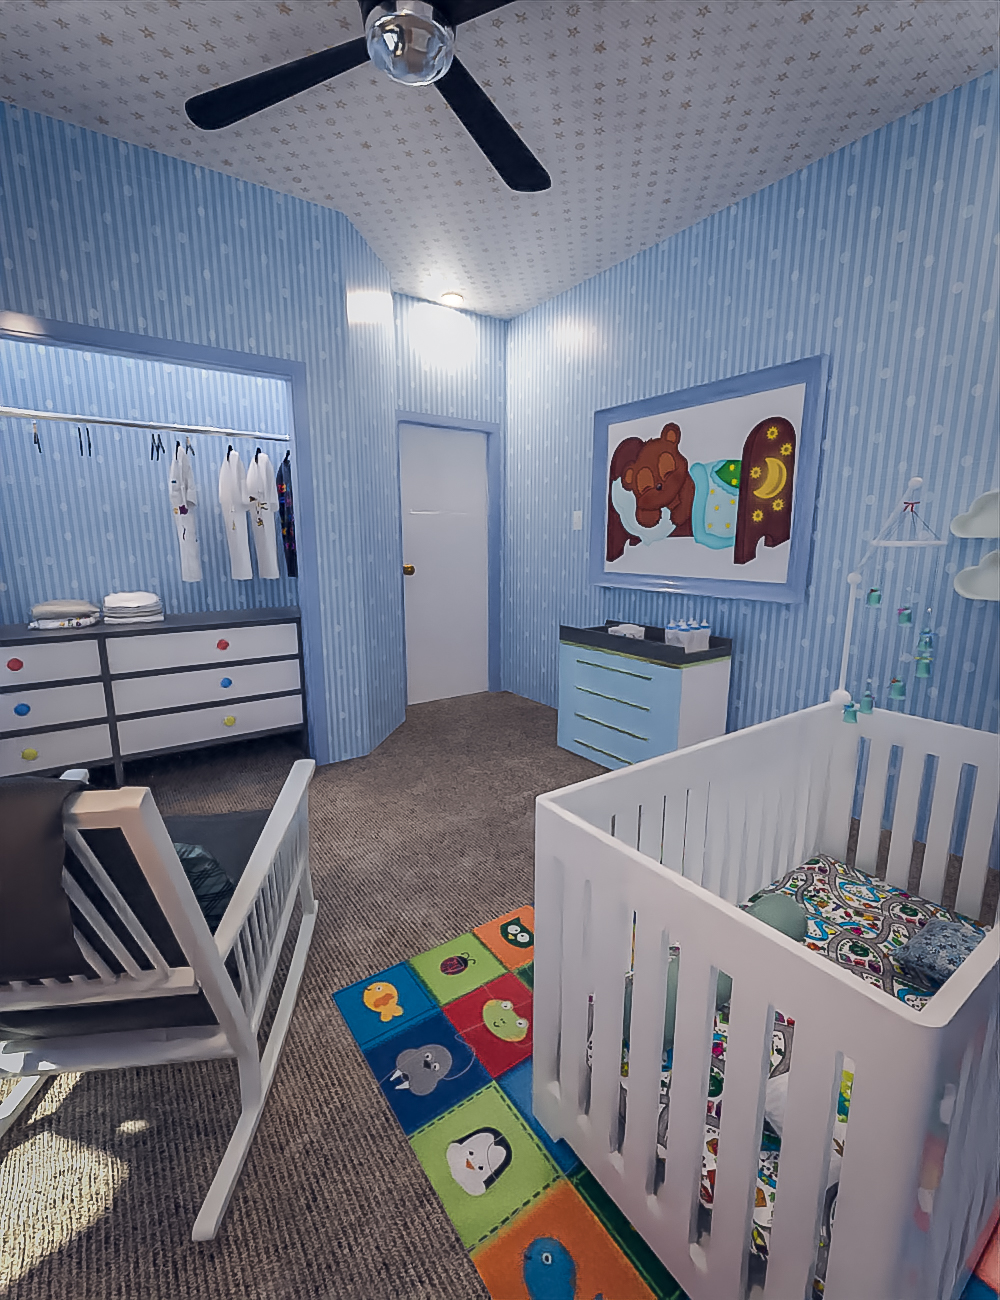 TS Nursery Room by: Tesla3dCorp, 3D Models by Daz 3D